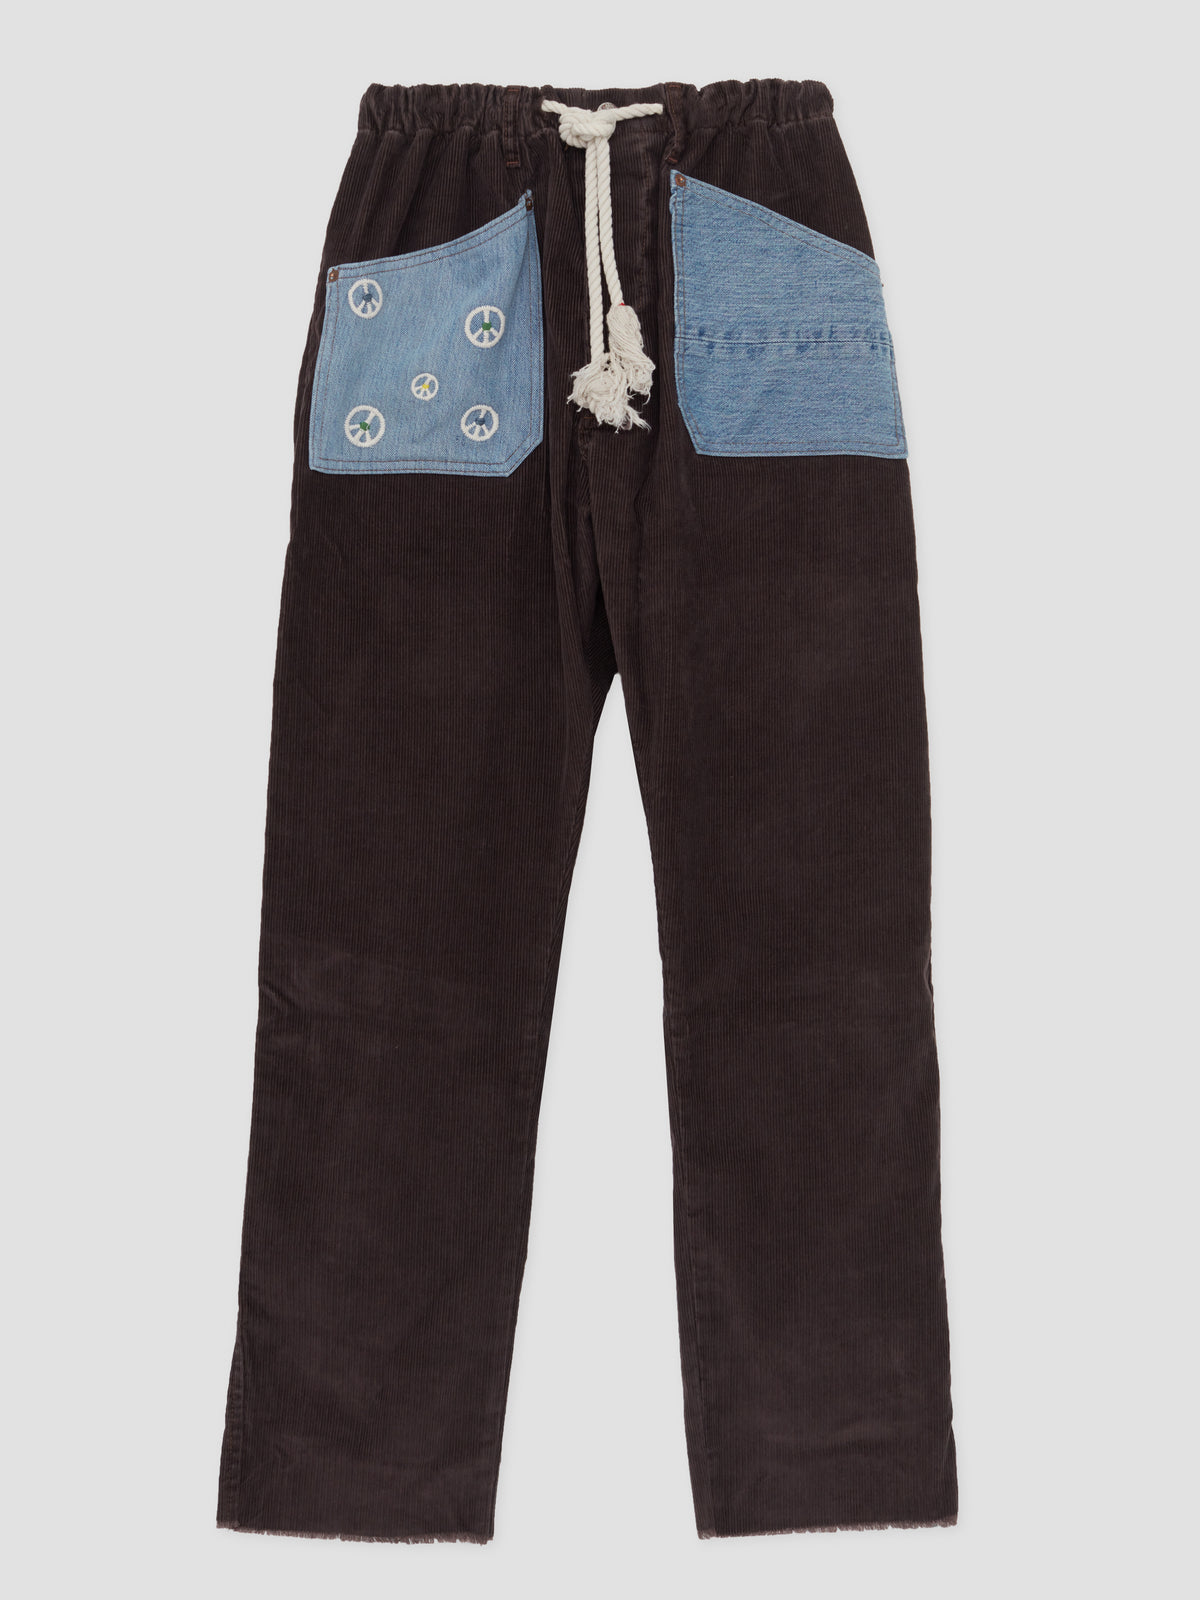 Dr. Collectors Peace & Recycle Denim Pocket Pants Brown - Men